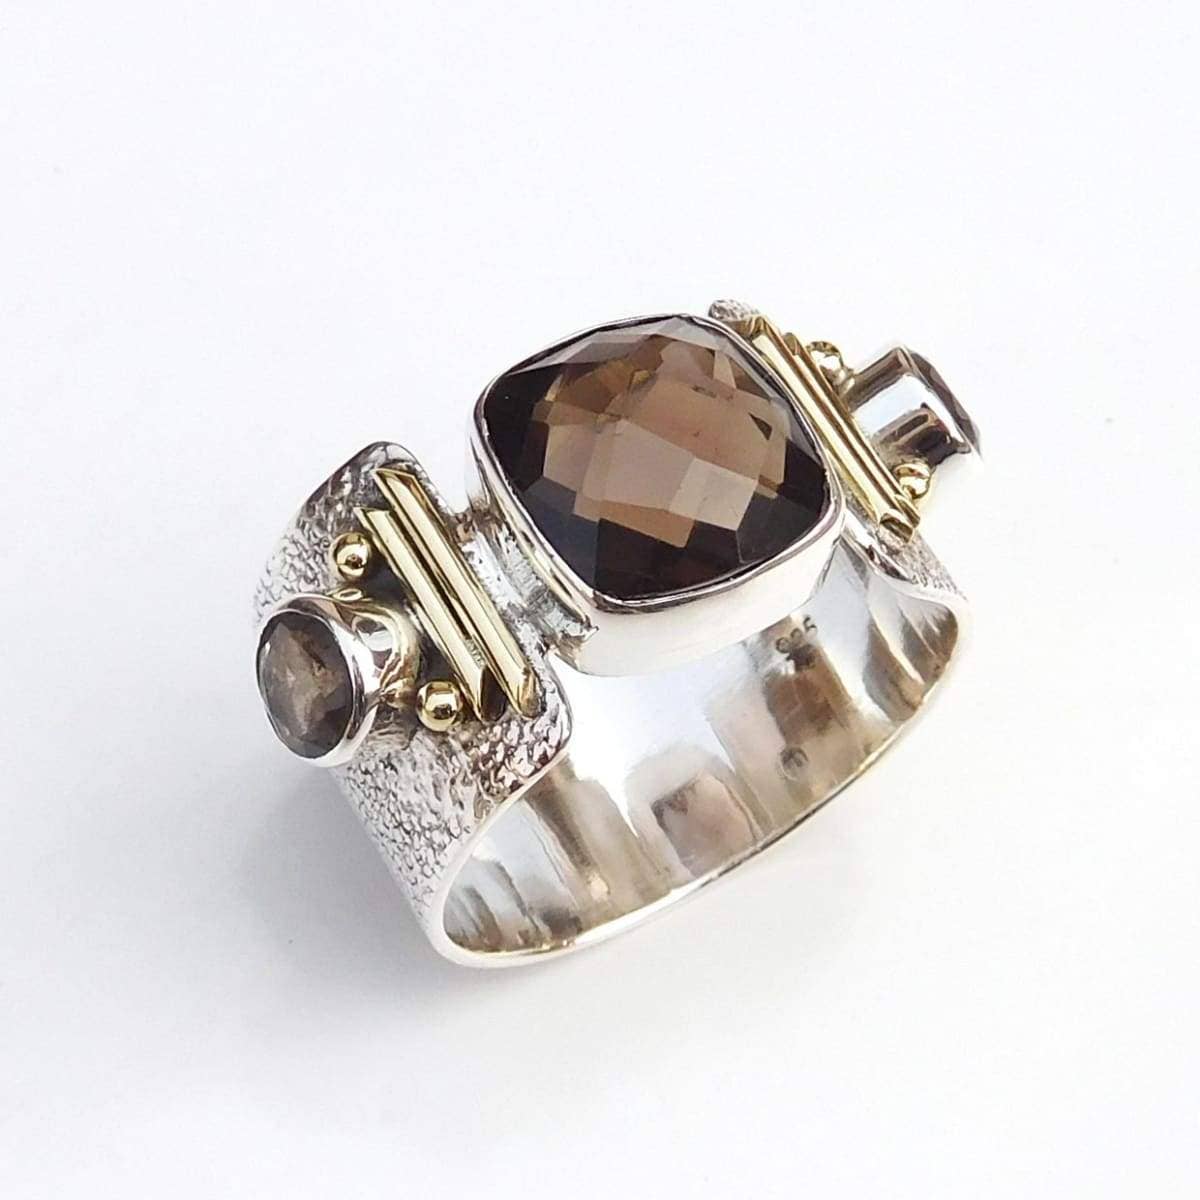 Discovered - Unique Handmade Ring, Smoky Quartz Ring, 925 Sterling Silver Smoky Quartz Ring, Nickel Free Jewelry